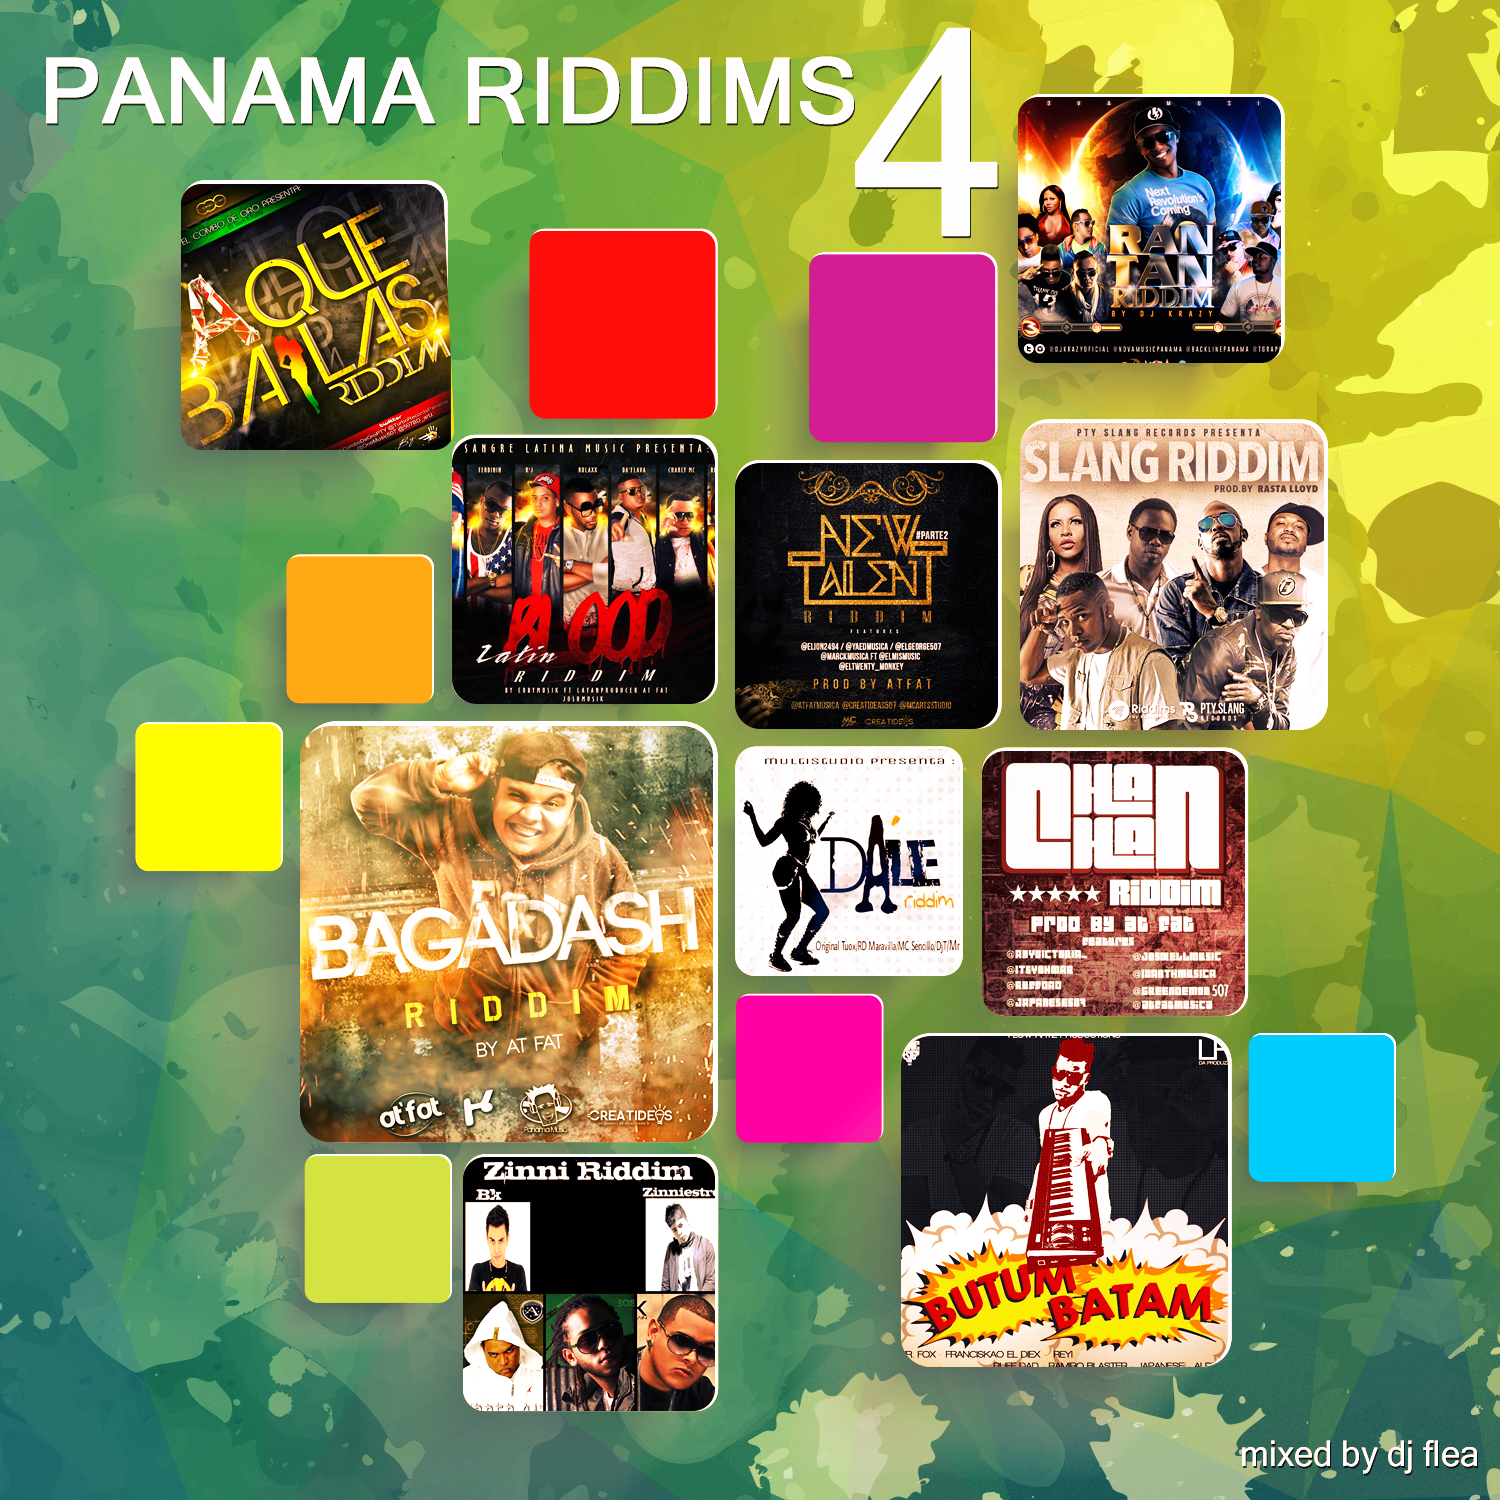 Panama Riddims 4